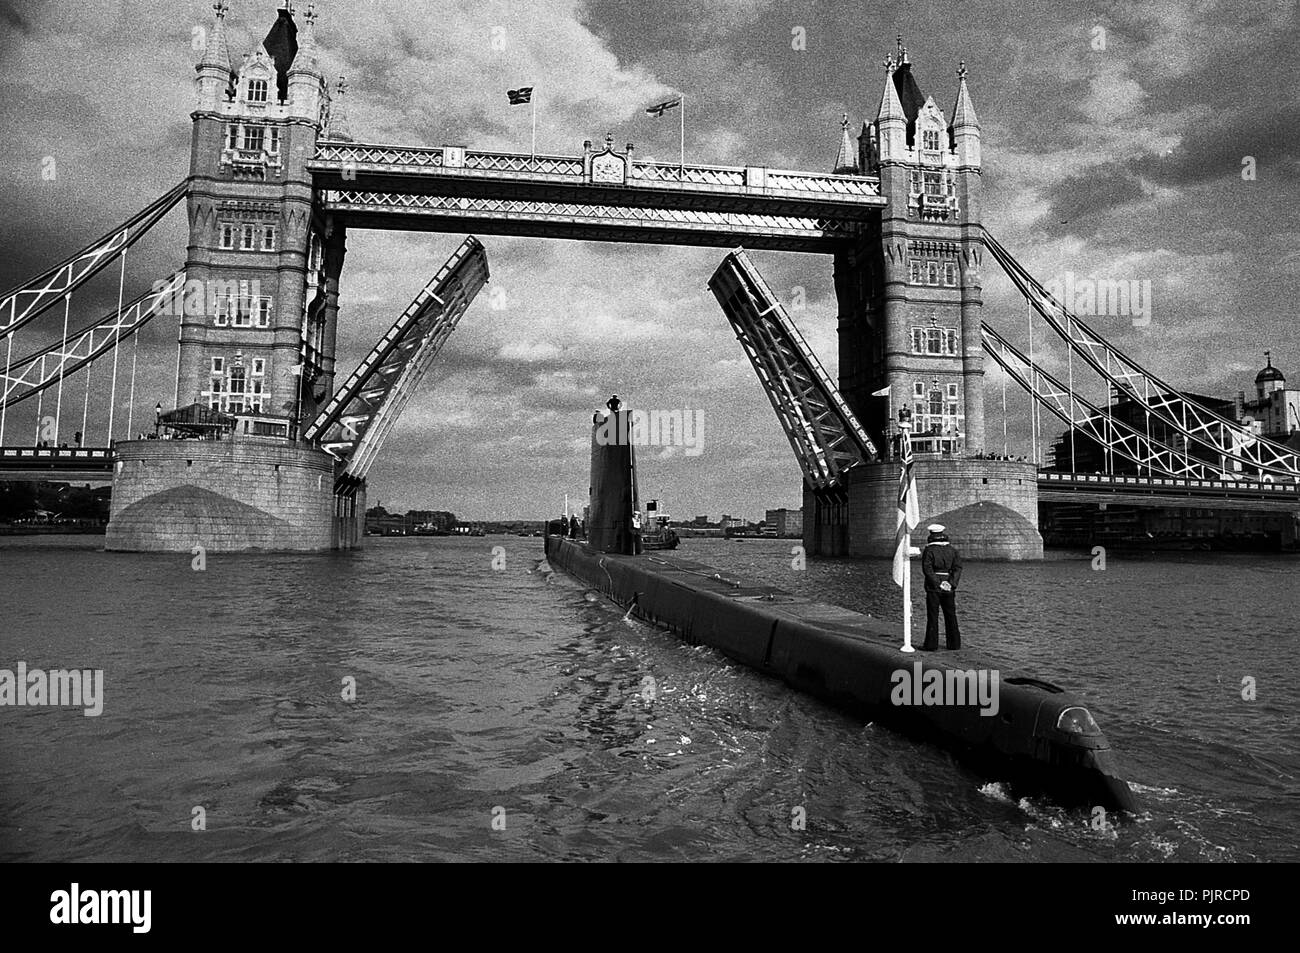 AJAXNETPHOTO. 9 Giugno, 1985. Londra, Inghilterra. - Lasciare Londra - sommergibile HMS OLYMPUS passa sotto il Tower Bridge dopo una visita di cortesia per la città. Foto:JONATHAN EASTLAND/AJAX. REF:HDD OLYMPUS 1985 9 850906 Foto Stock